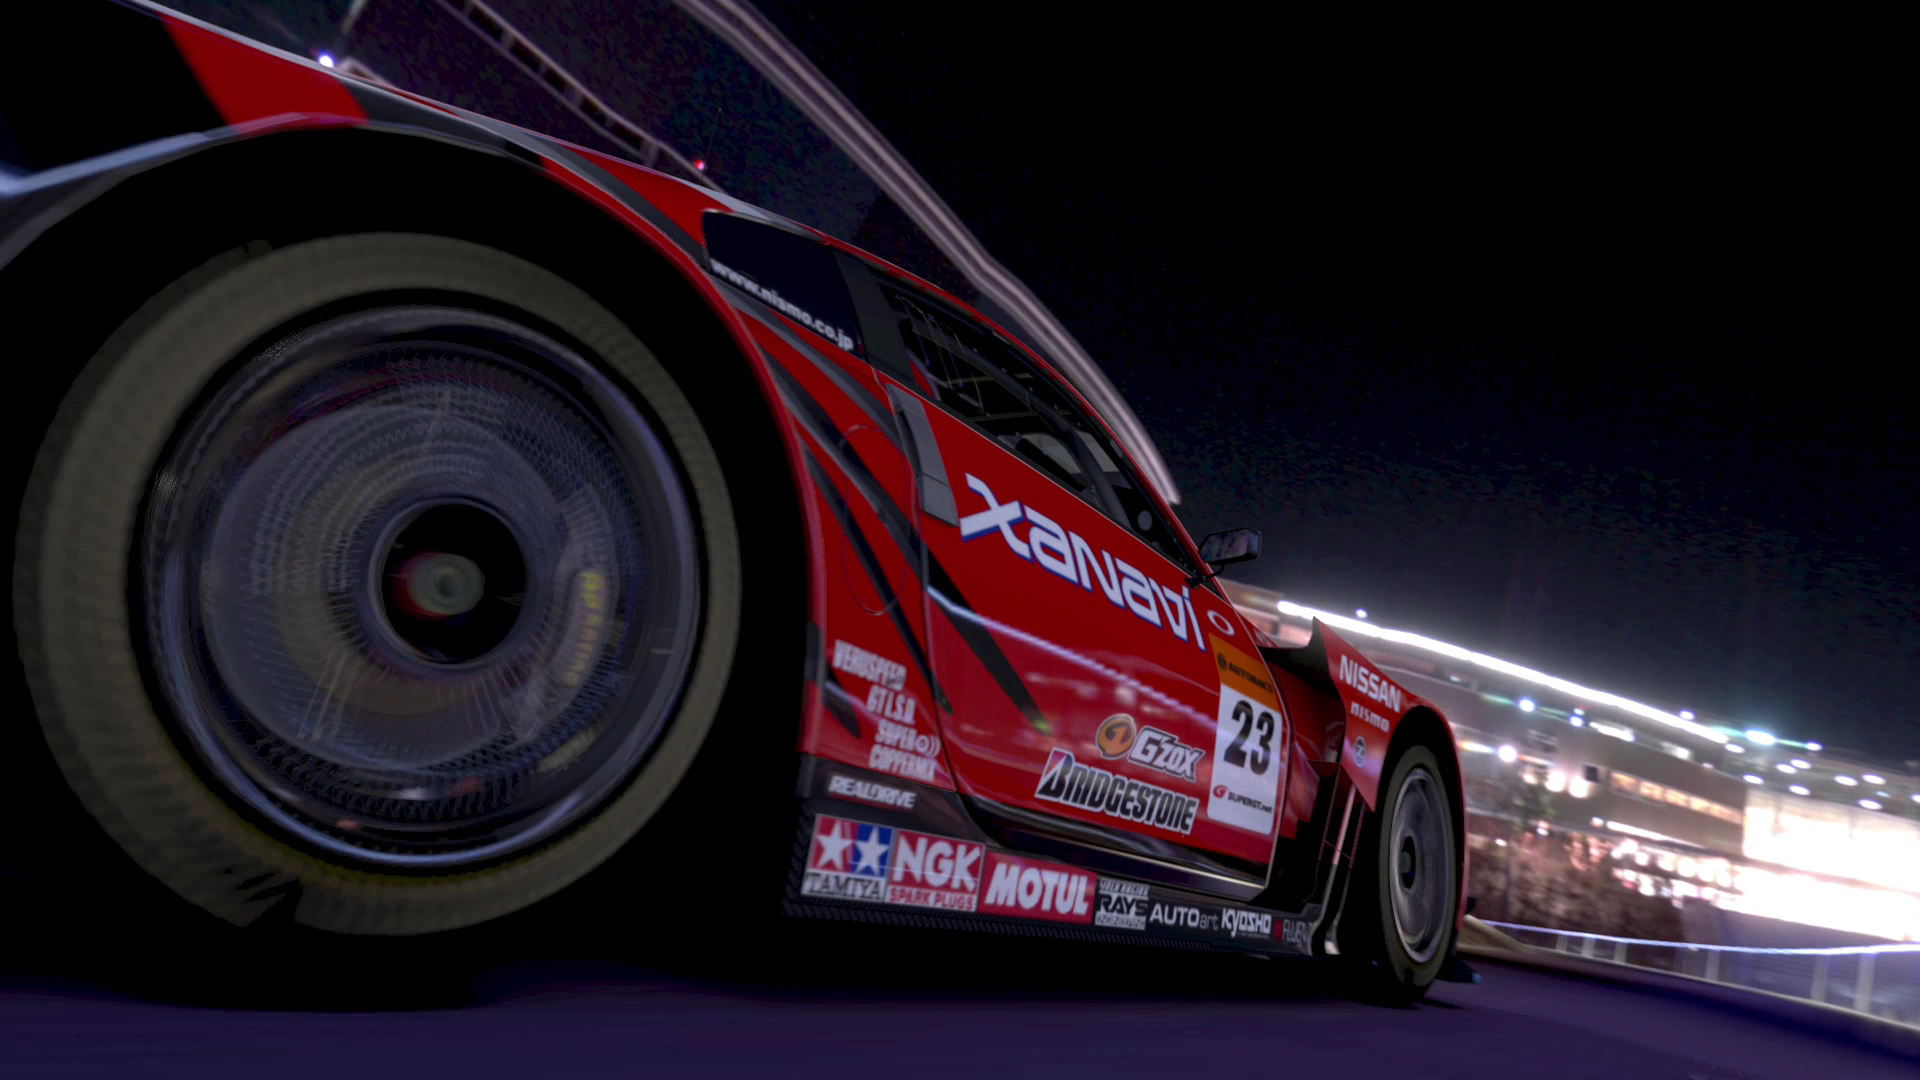 Gran Turismo 5 - Fondos de pantalla gratis para Widescreen escritorio PC  1920x1080 Full HD